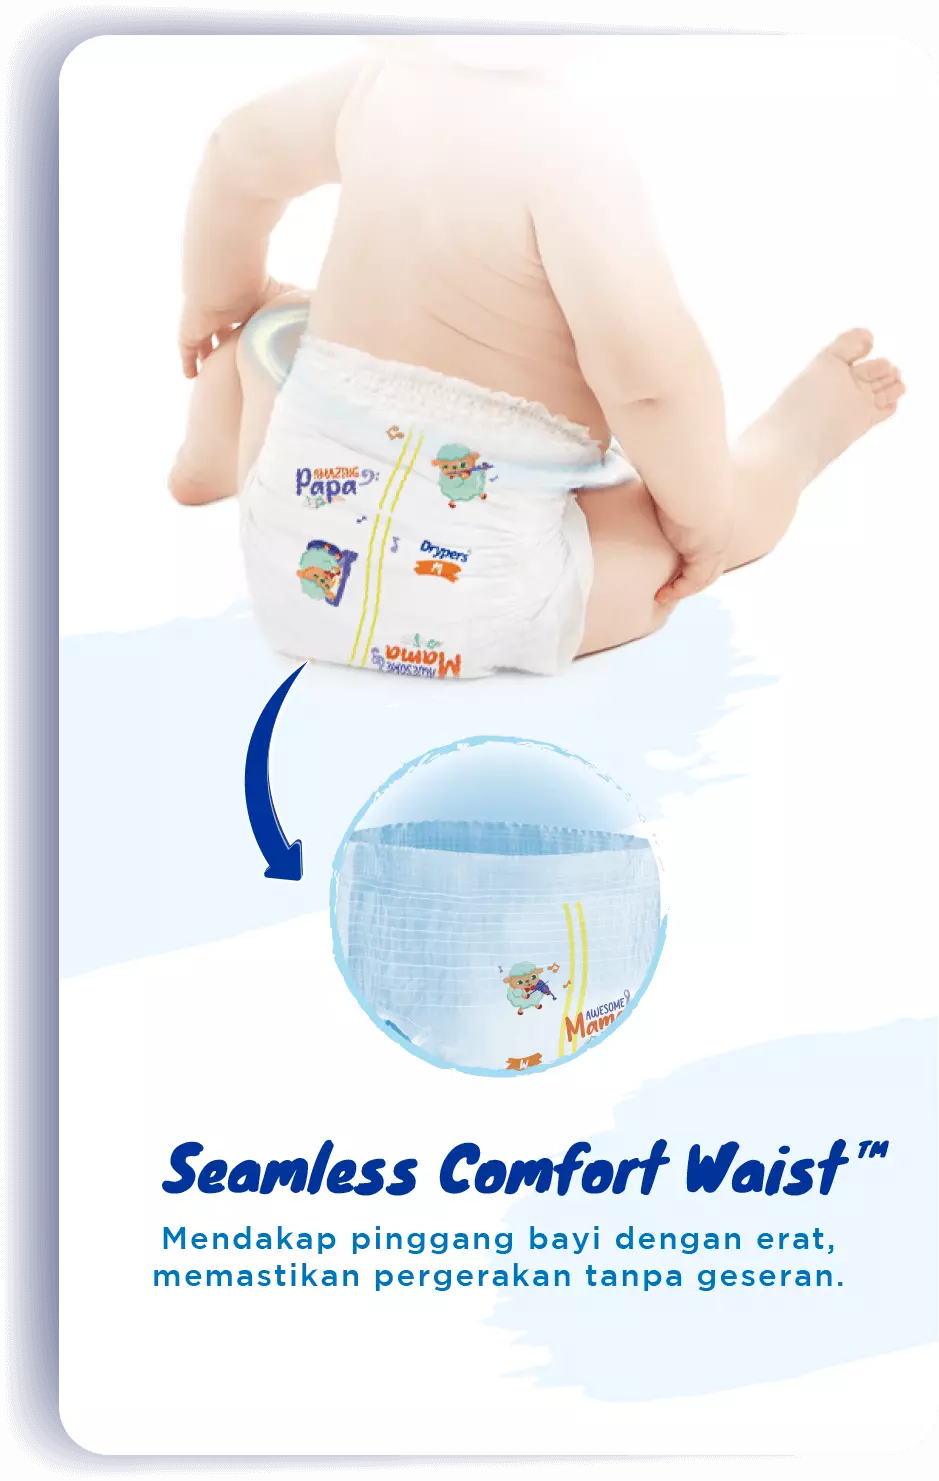 Seamless Comfort Waist™: Mendakap pinggang bayi dengan erat, memastikan pergerakan tanpa geseran.